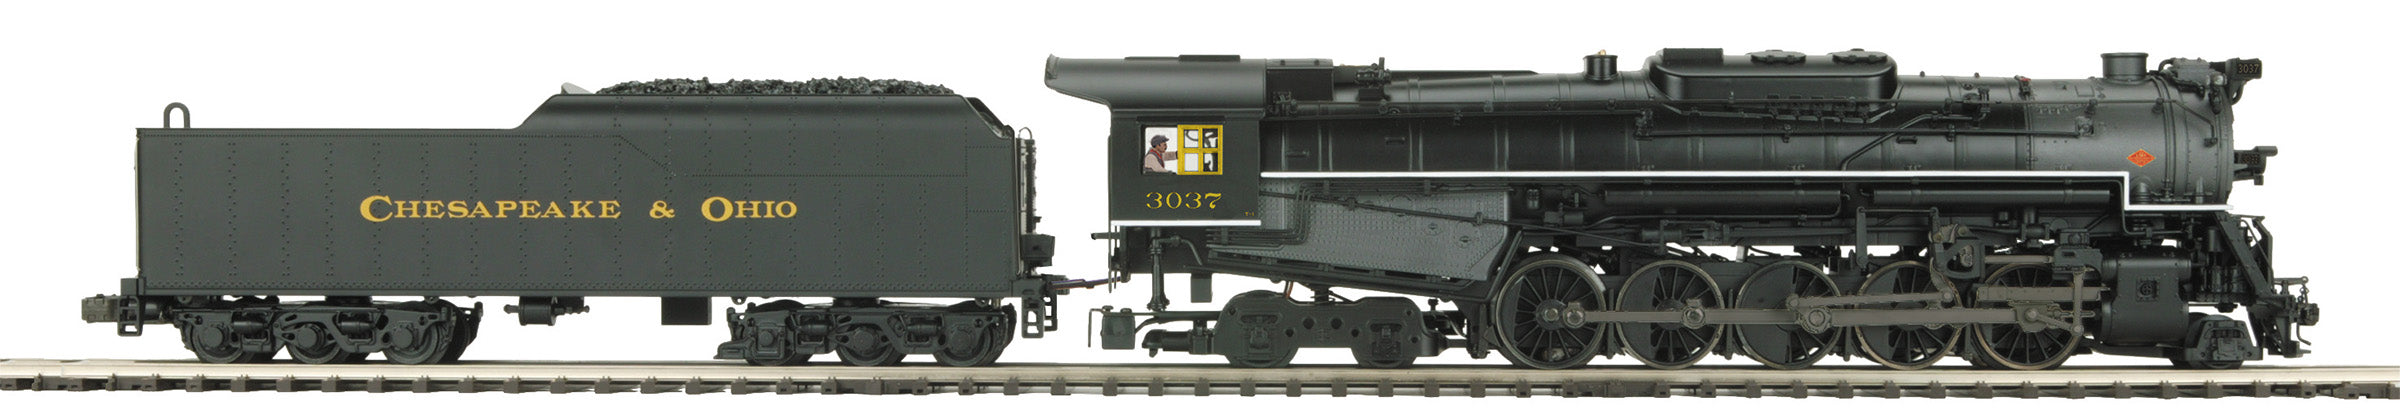 MTH 20-3851-1 - T1 2-10-4 Steam Engine "Chesapeake & Ohio" #3037 w/ PS3